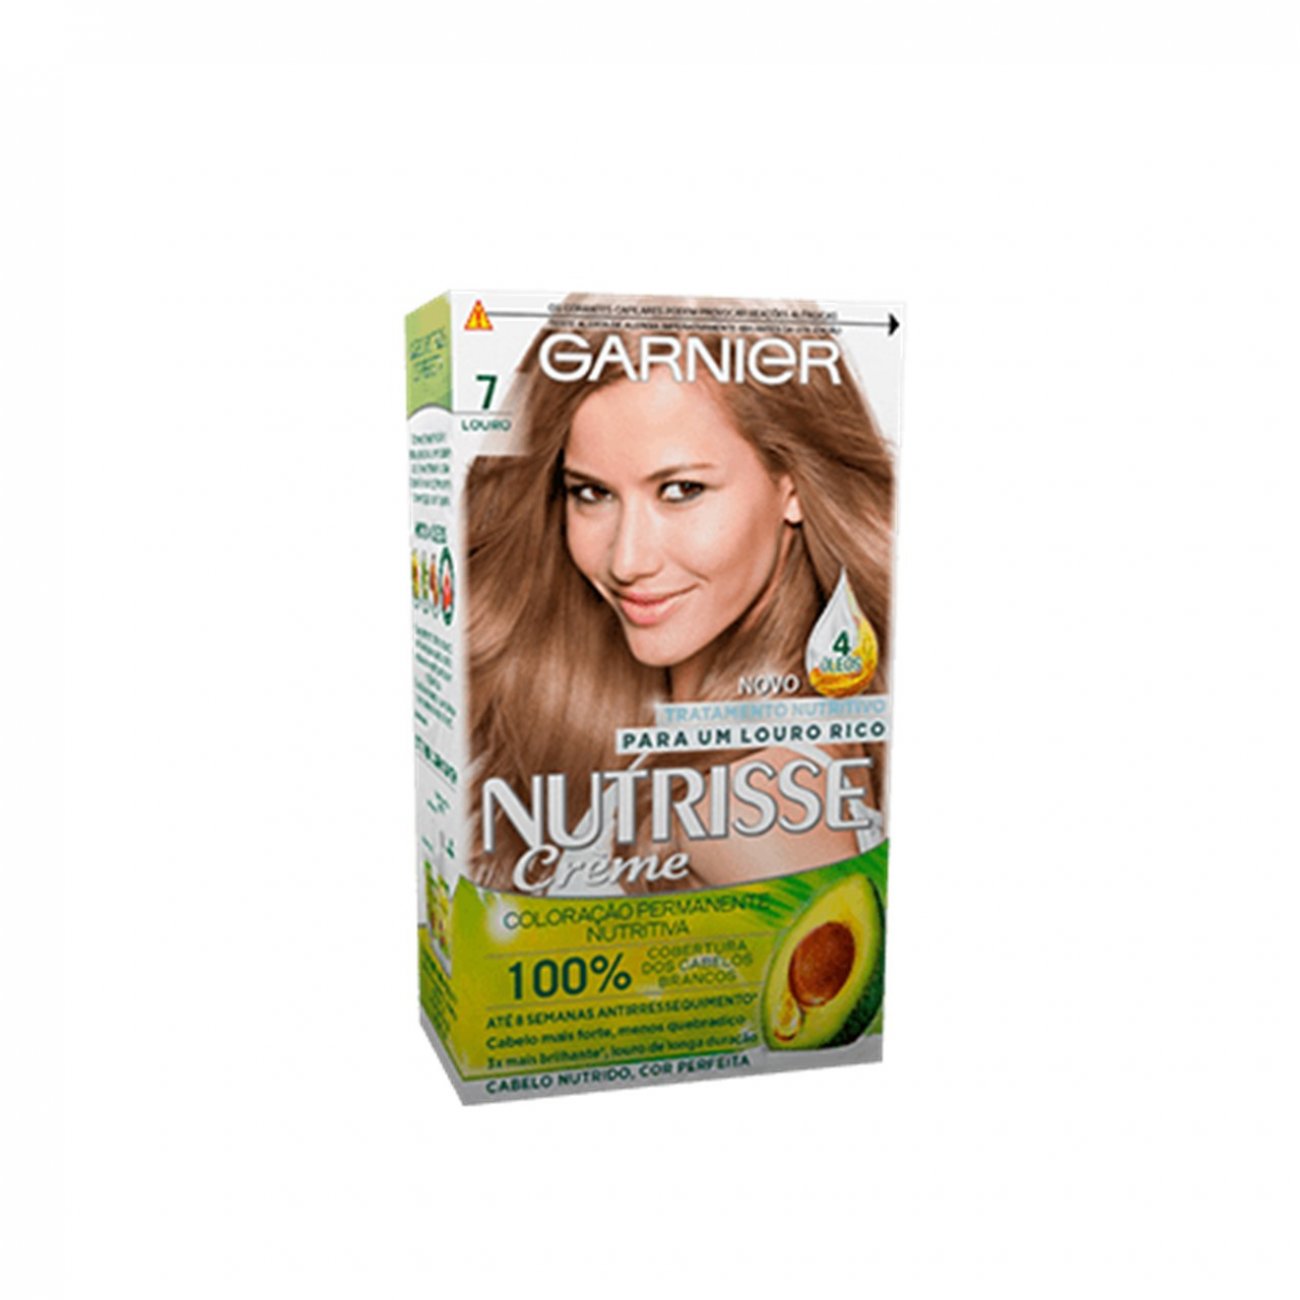 Buy Garnier Nutrisse Crème 7 Dark Blonde Permanent Hair Dye · Switzerland